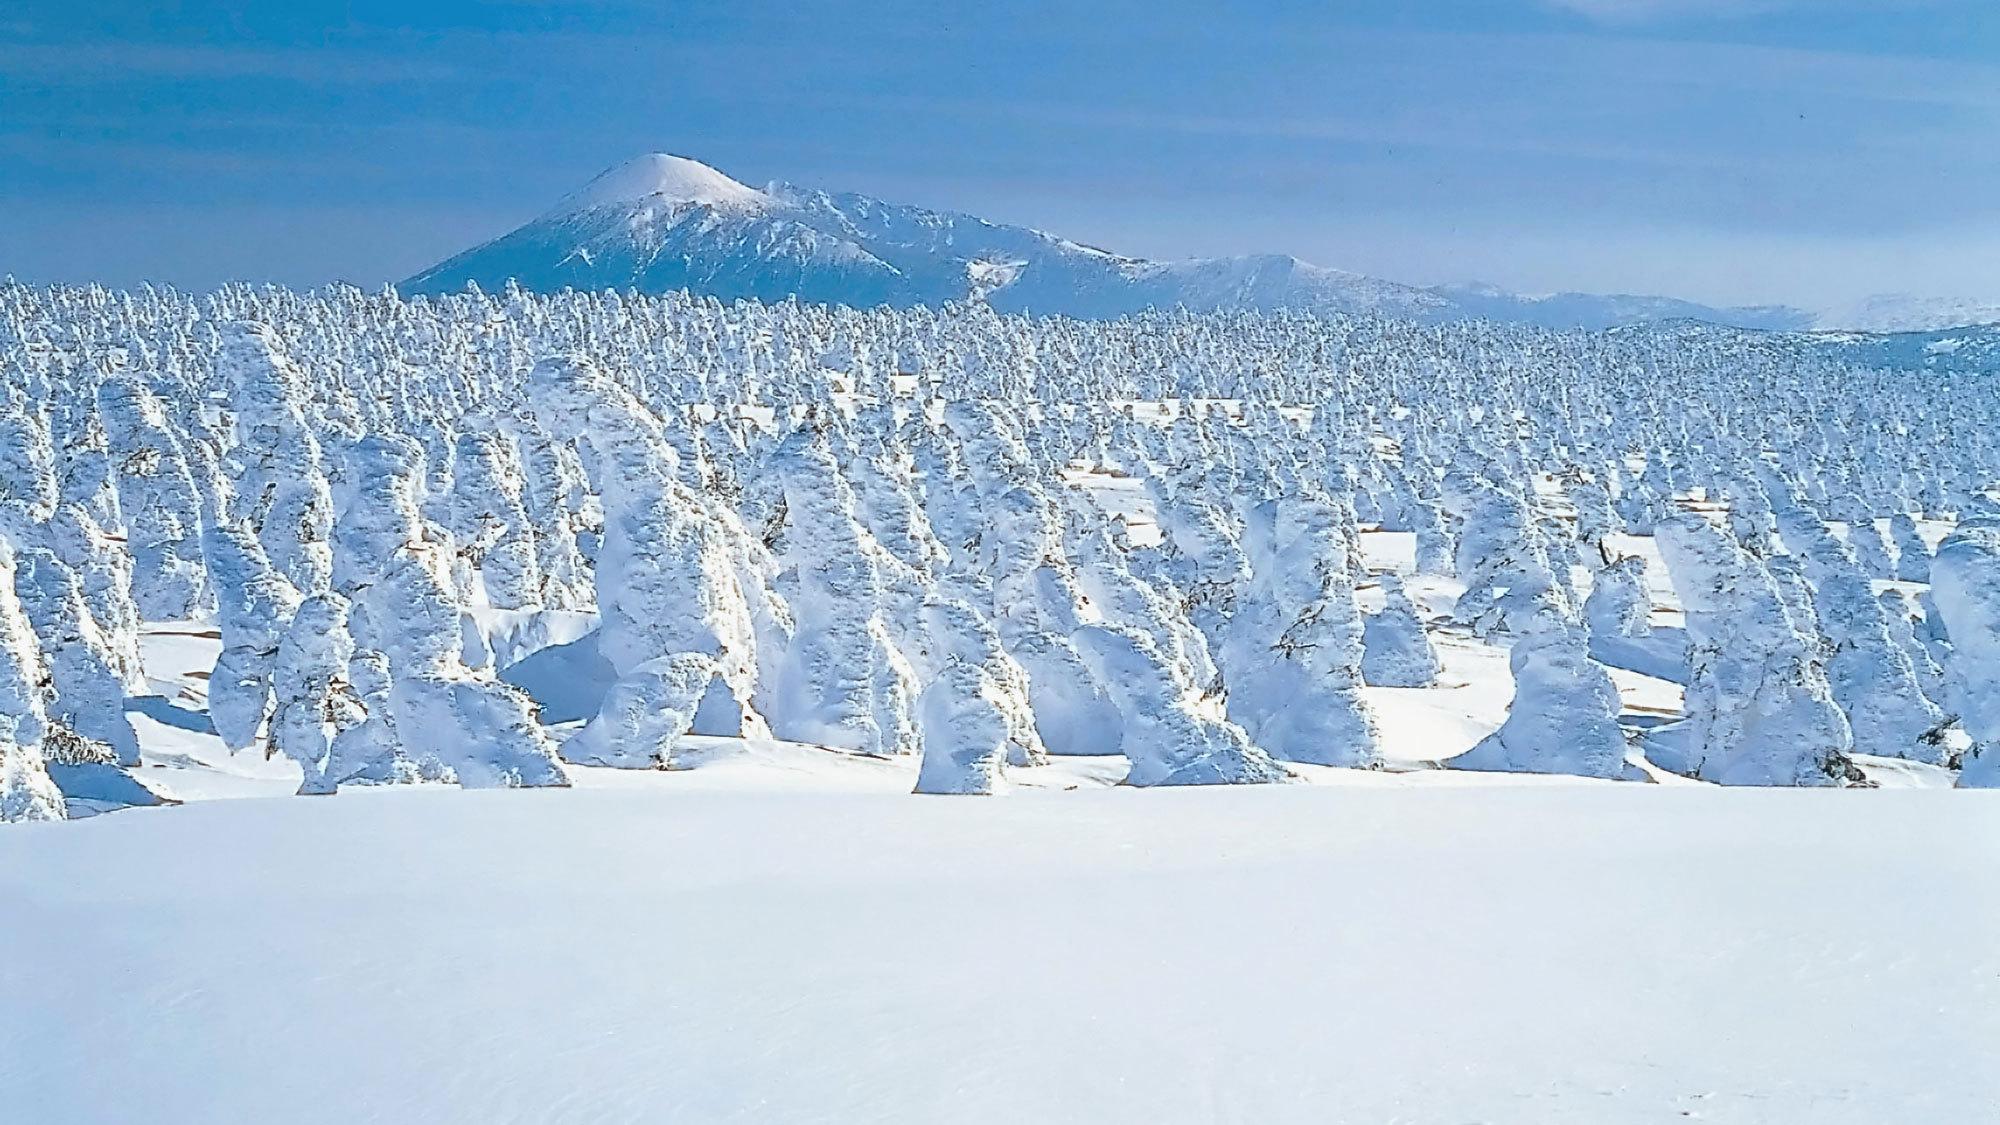 【樹氷】冬の八幡平の見どころの1つでもある樹氷。白の鎧をまとった木々が密集している光景は絶景です。